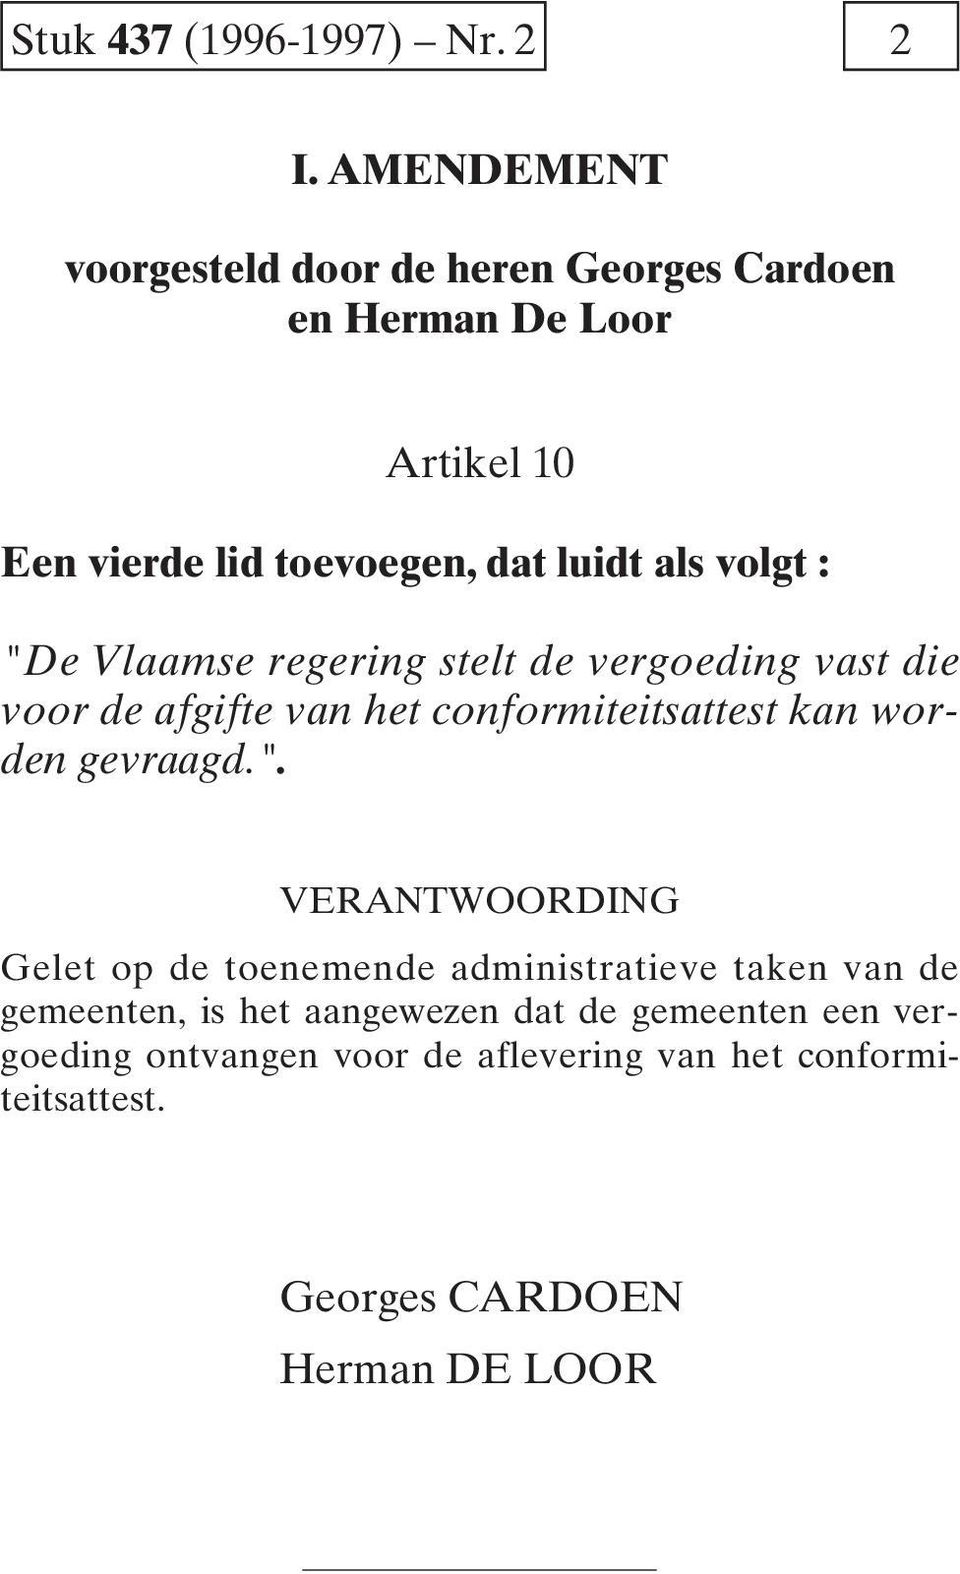 als volgt : "De Vlaamse regering stelt de vergoeding vast die voor de afgifte van het conformiteitsattest kan worden